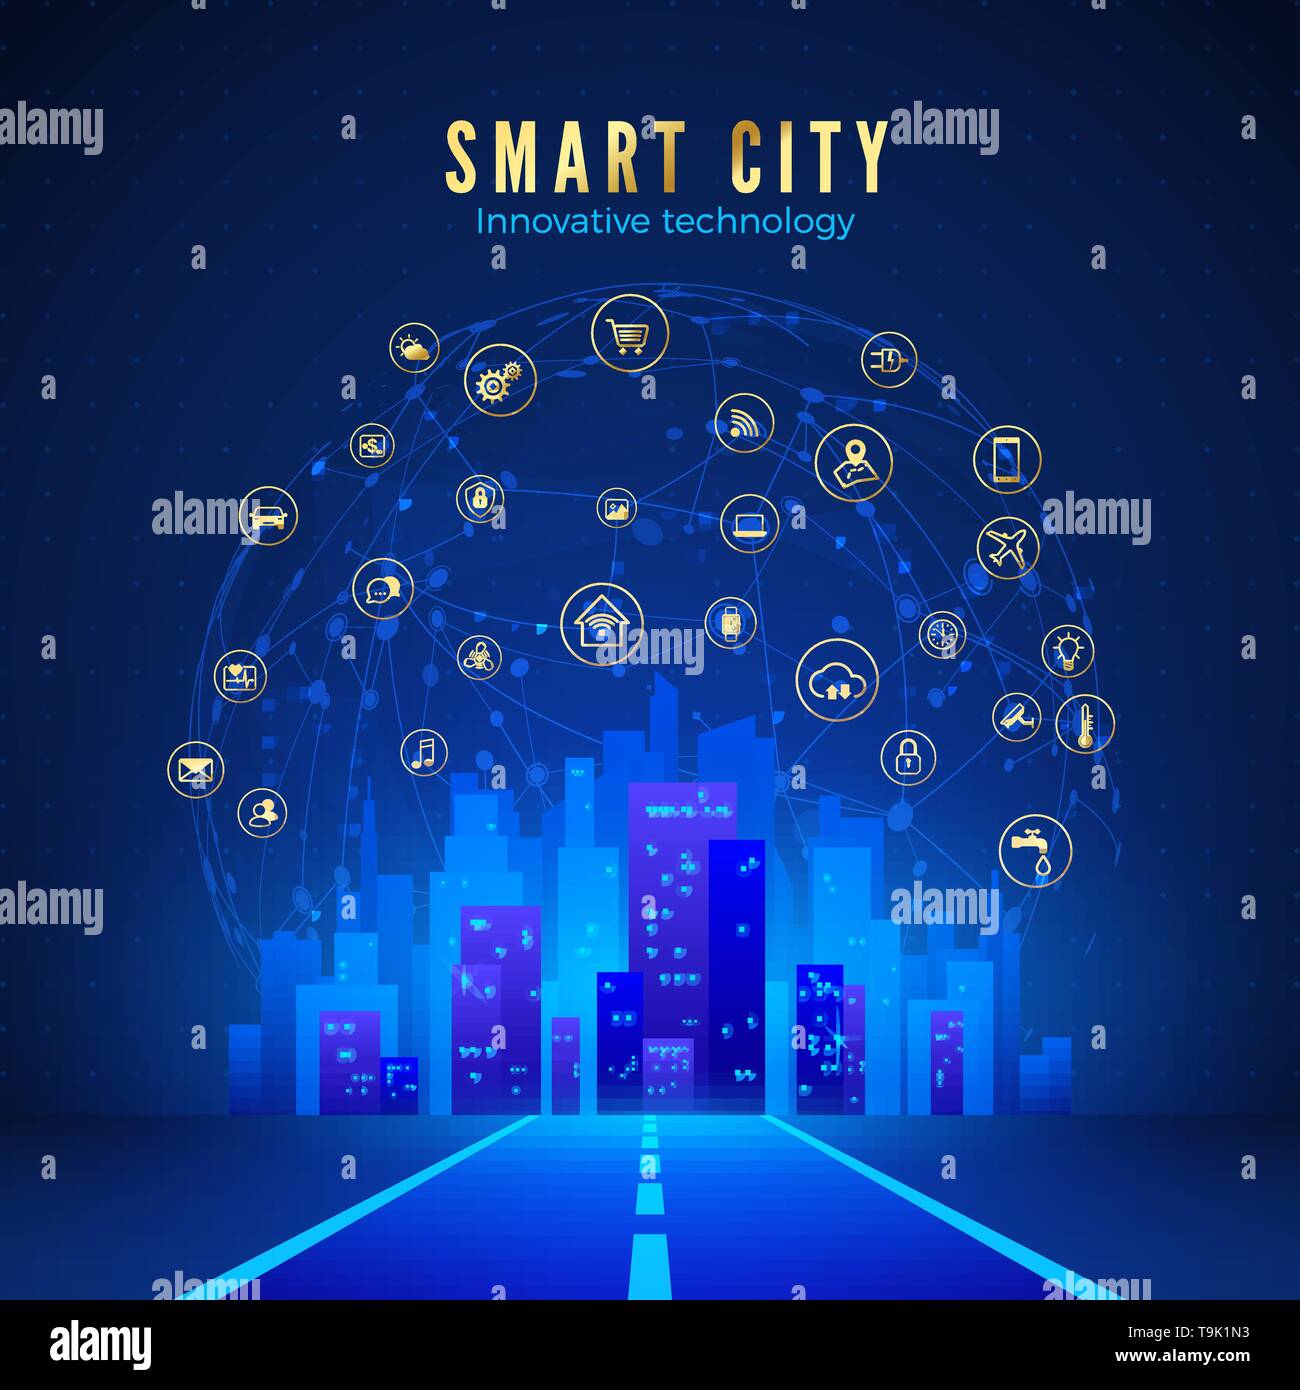 Smart City oder IOT-Konzept. Straße, Stadt Landschaft in blauer Farbe und Global Web mit smart systems Symbole auf dem Hintergrund. Vector Illustration Stock Vektor